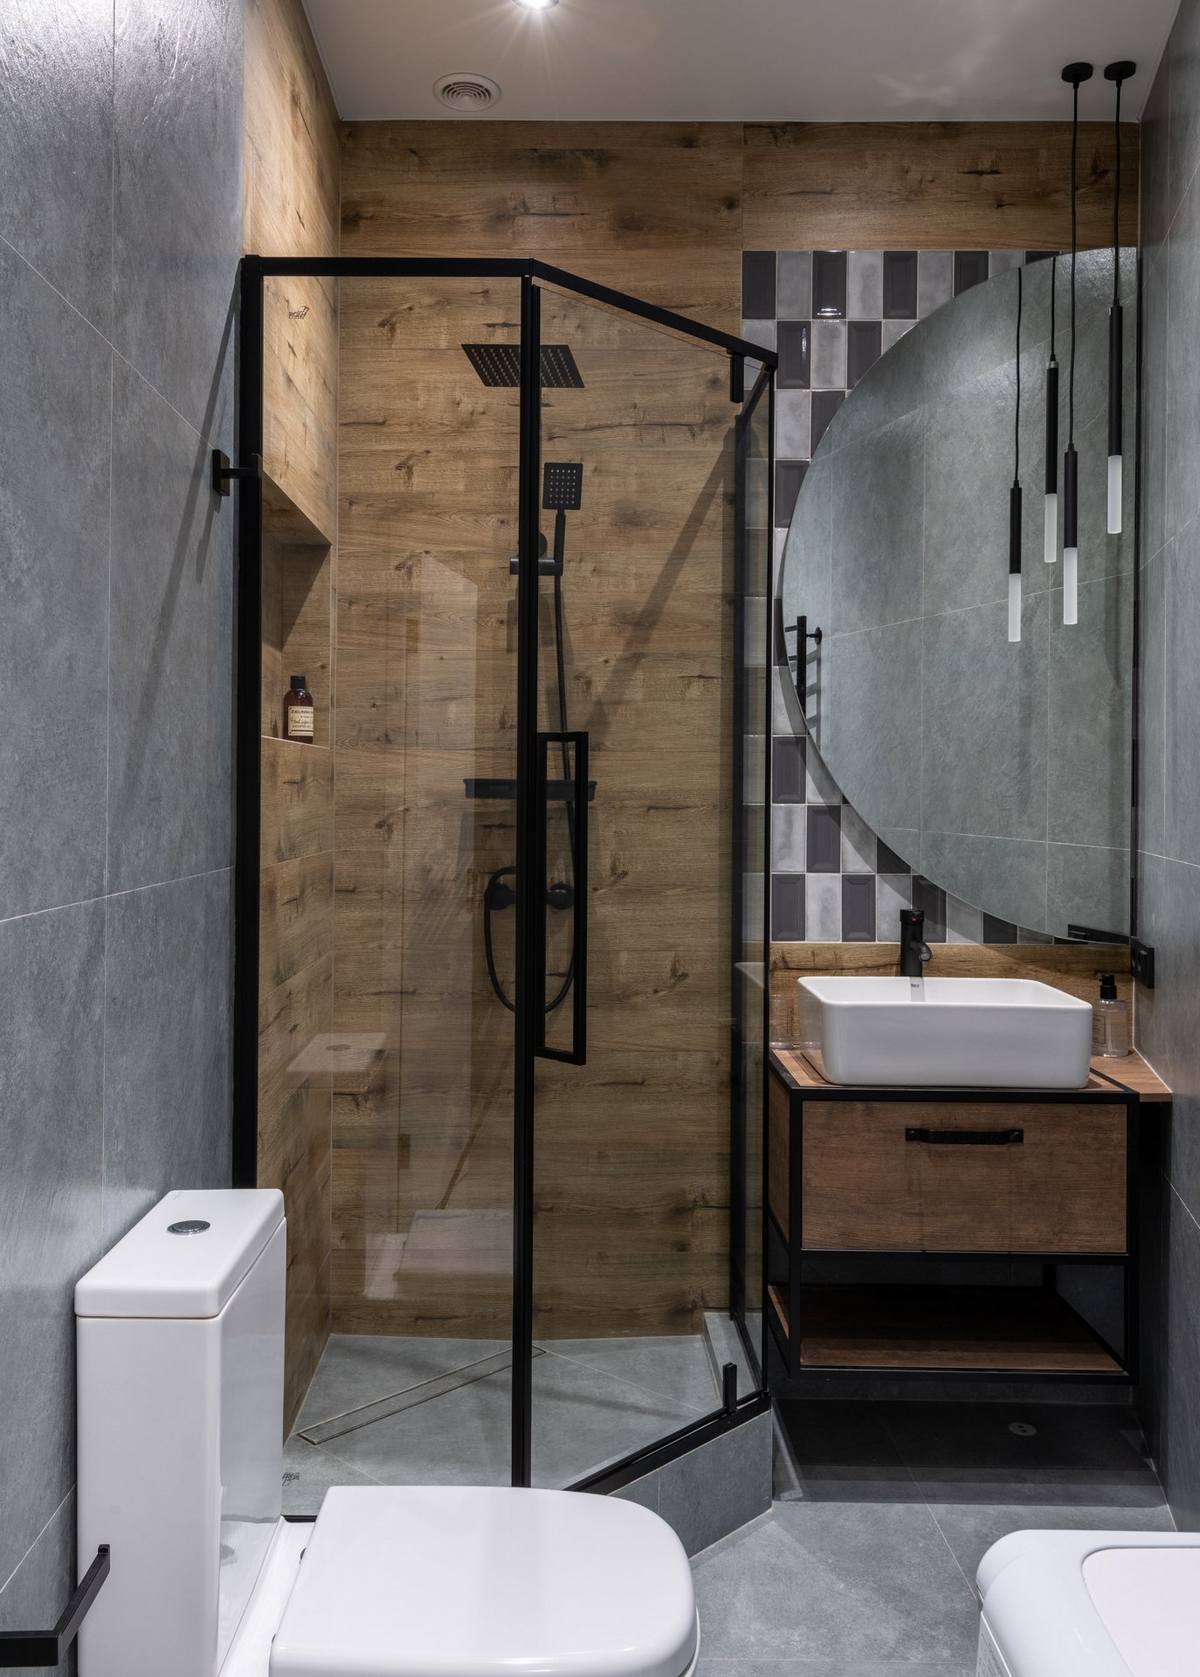 Phòng tắm, nhà vệ sinh nhỏ gọn nhưng vẫn 'chất' nhờ màu xám của gạch và sắc nâu ấm áp của gỗ. Tấm gương hình bán nguyệt cũng là điểm sáng cho phòng tắm nhỏ.